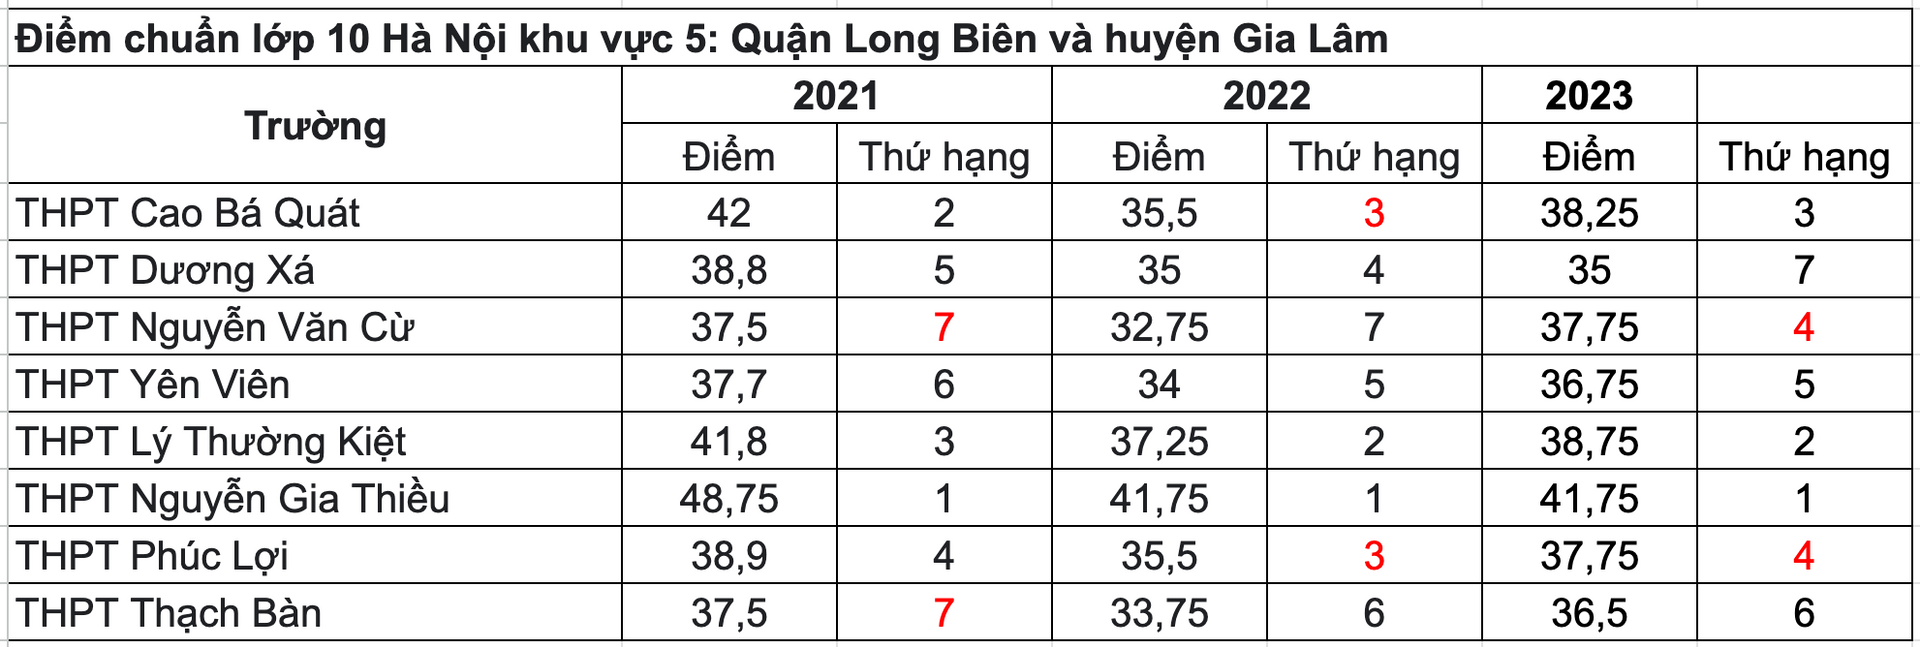 Điểm chuẩn TUYỂN SINH LỚP 10 THPT các trường của Hà Nội 3 năm gần đây- Ảnh 8.